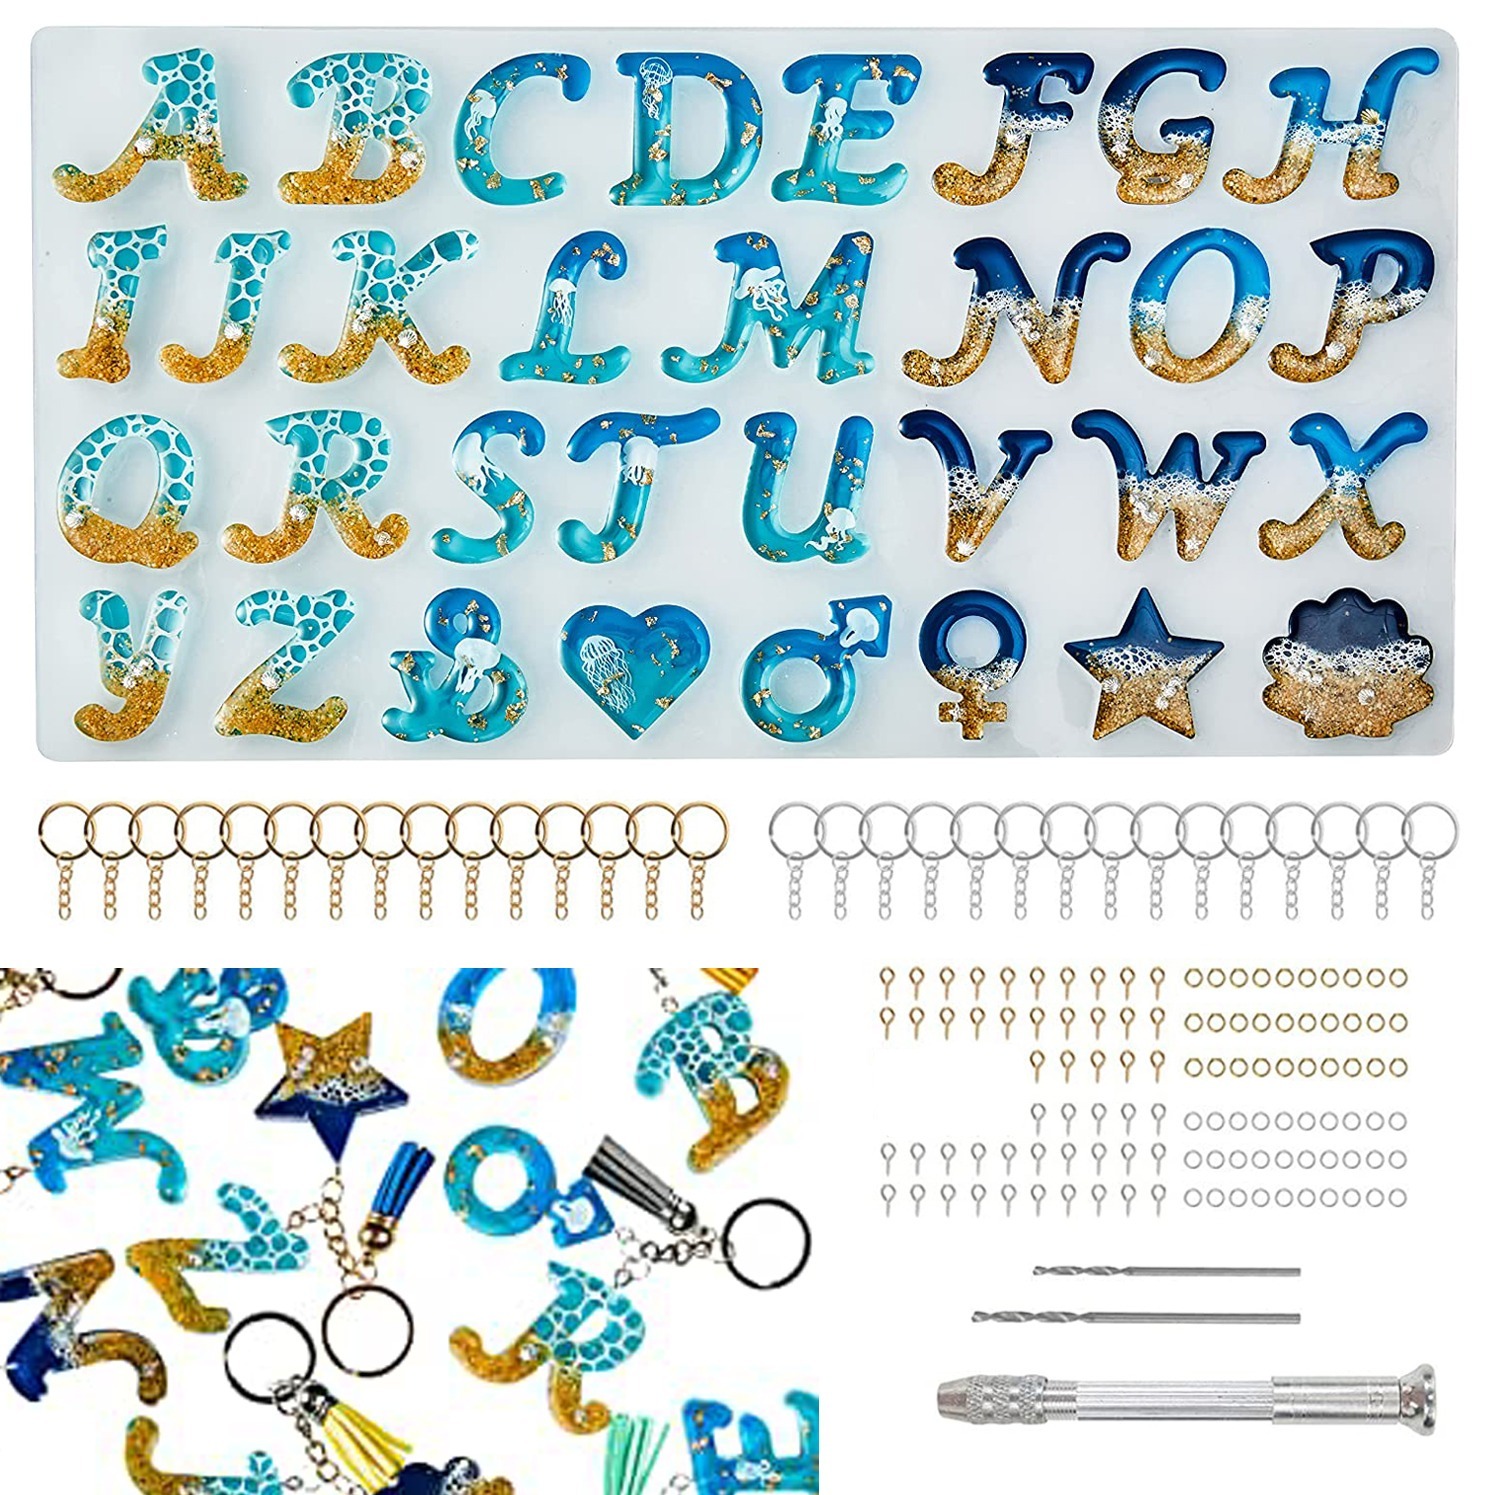 Resin Letter Molds Letter Resin Cat Design Mold Reusable Letters Casting  Epoxy Resin Mold Resin Keychain Letter Molds For Resin - AliExpress